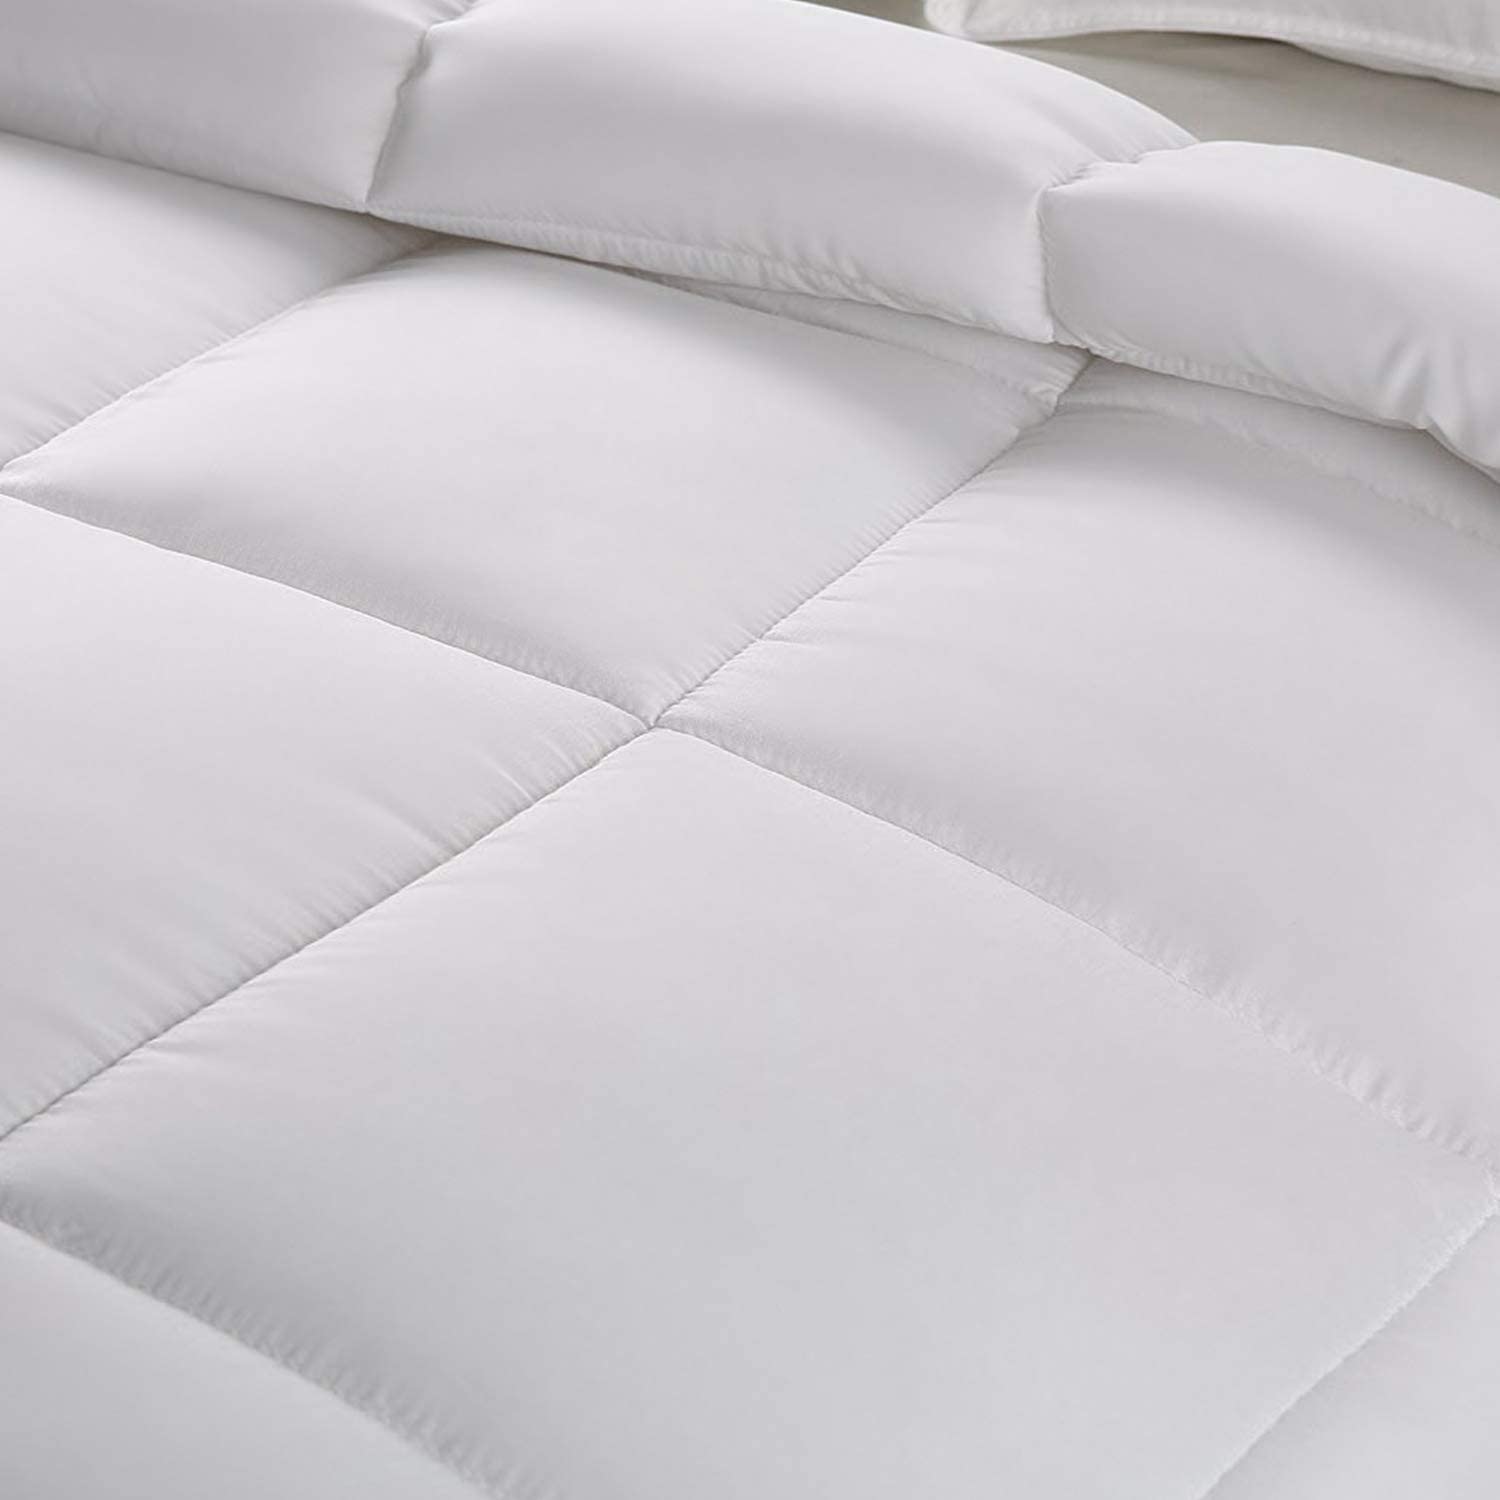 Utopia Bedding Down Alternative Comforter (Full, White) All Season Comforter eBay